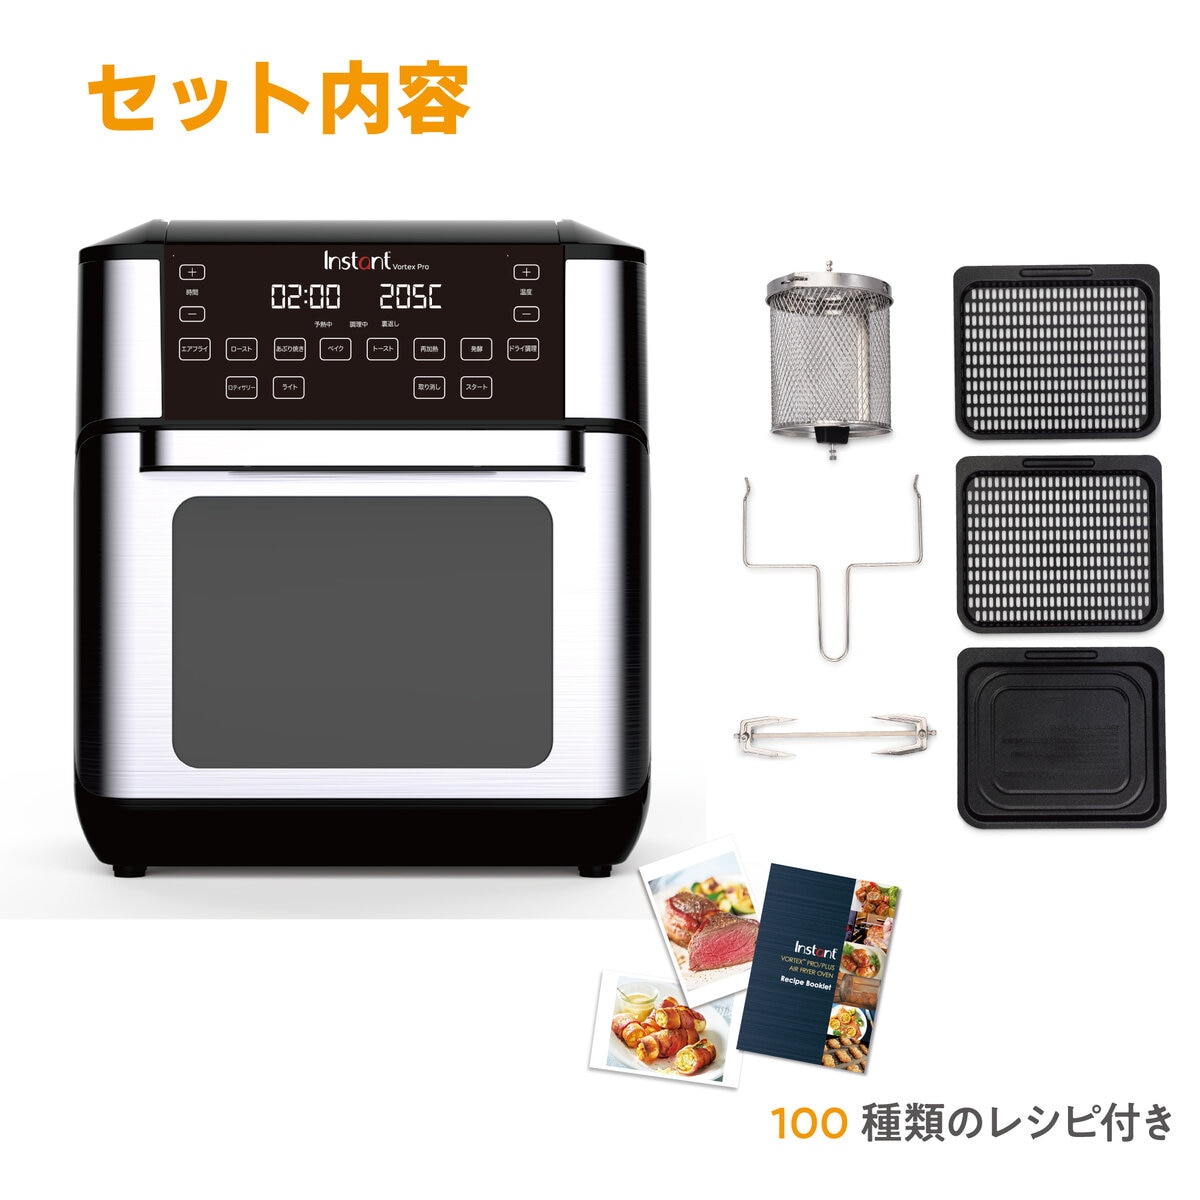 インスタントポット エアフライヤーオーブン | Costco Japan